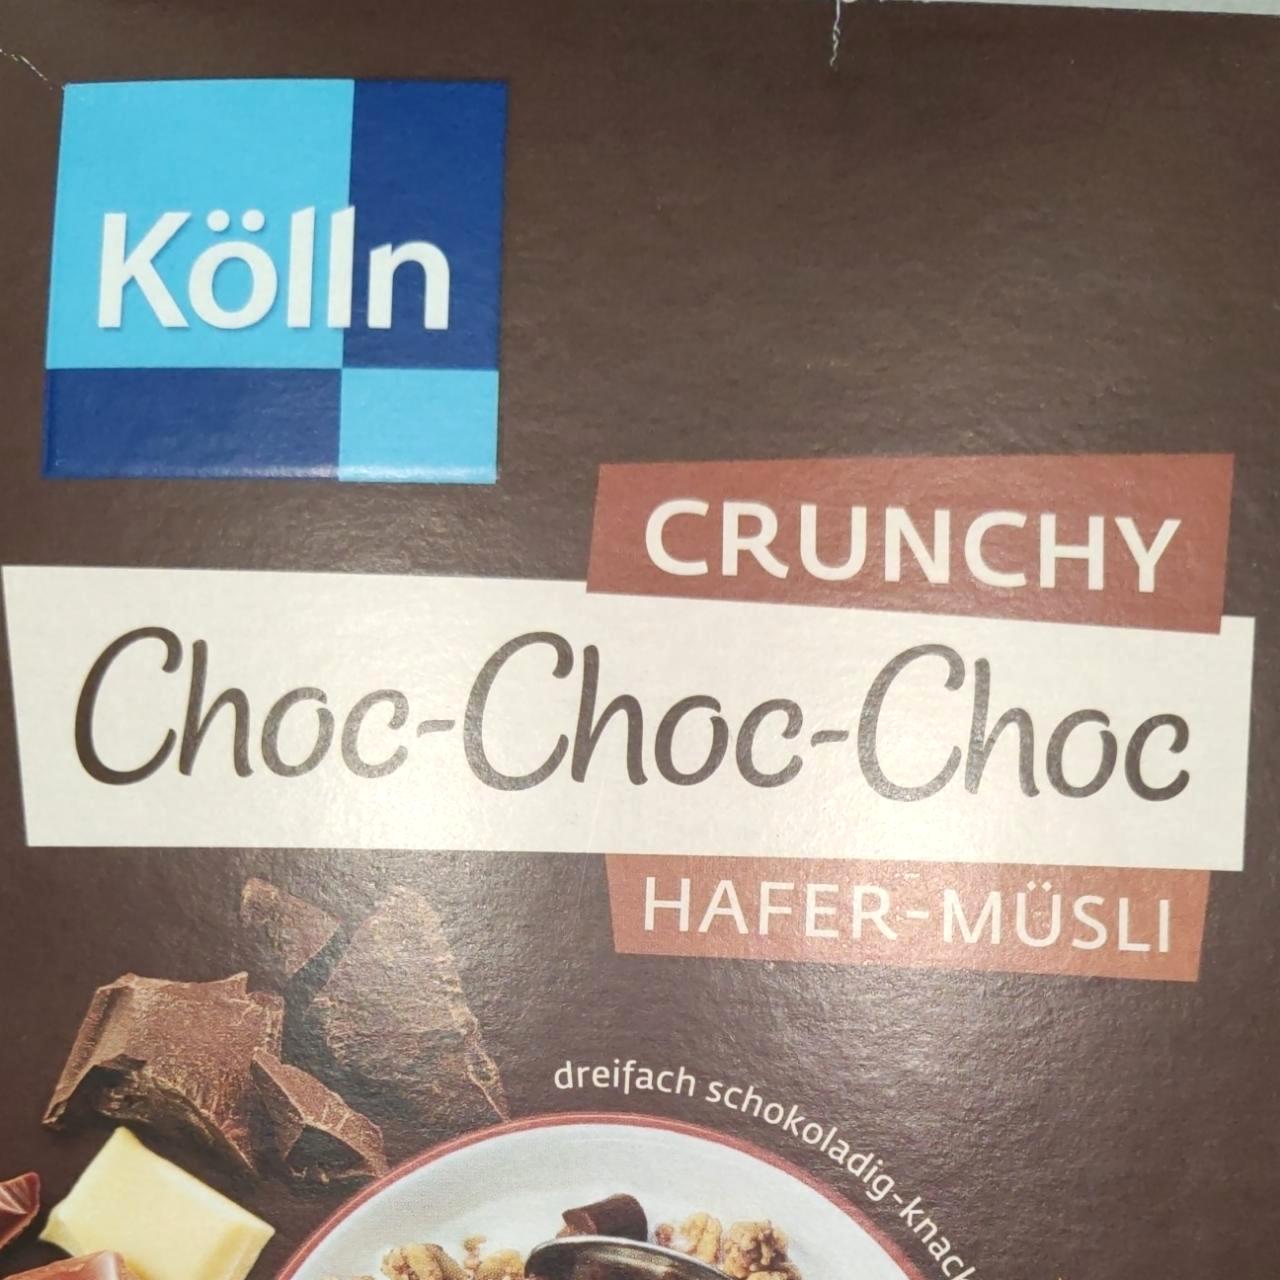 Képek - Crunchy choc-choc-choc hafer-müsli Kölln